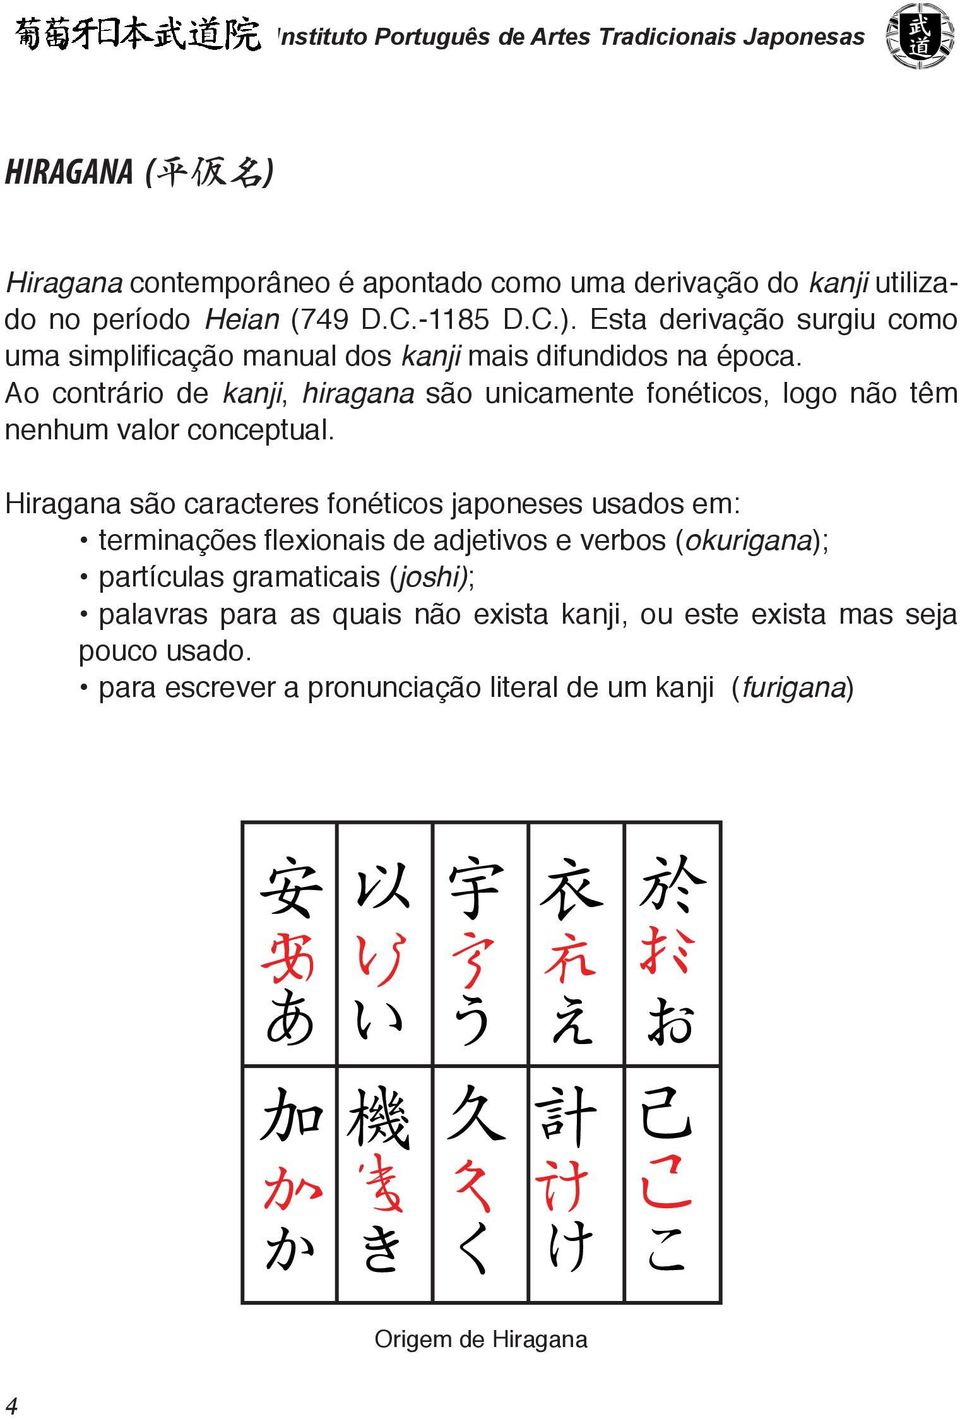 Hiragana são caracteres fonéticos japoneses usados em: terminações flexionais de adjetivos e verbos (okurigana); partículas gramaticais (joshi); palavras